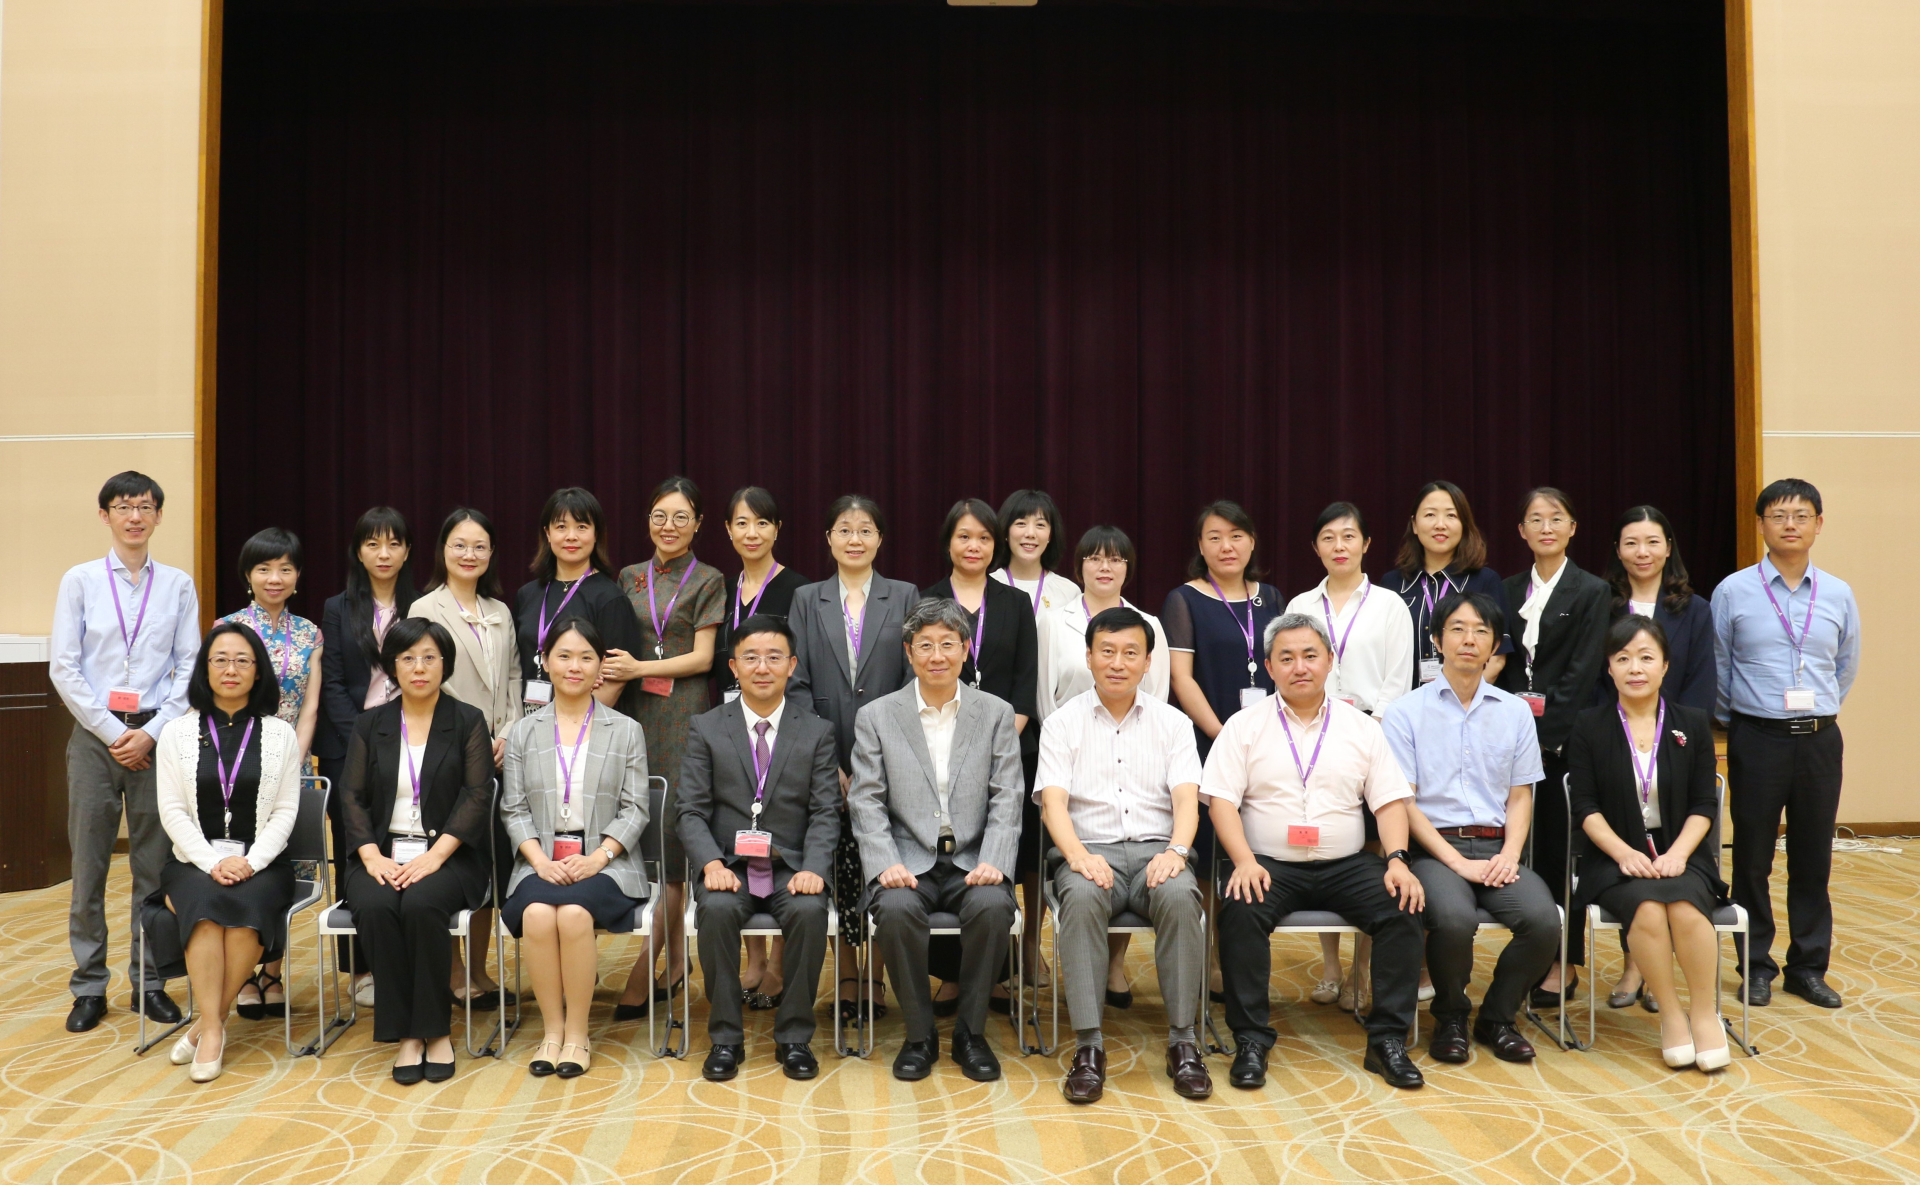 中国の大学の日本語教師を対象にした訪日研修を実施<br>23名が第一期生として参加<br>